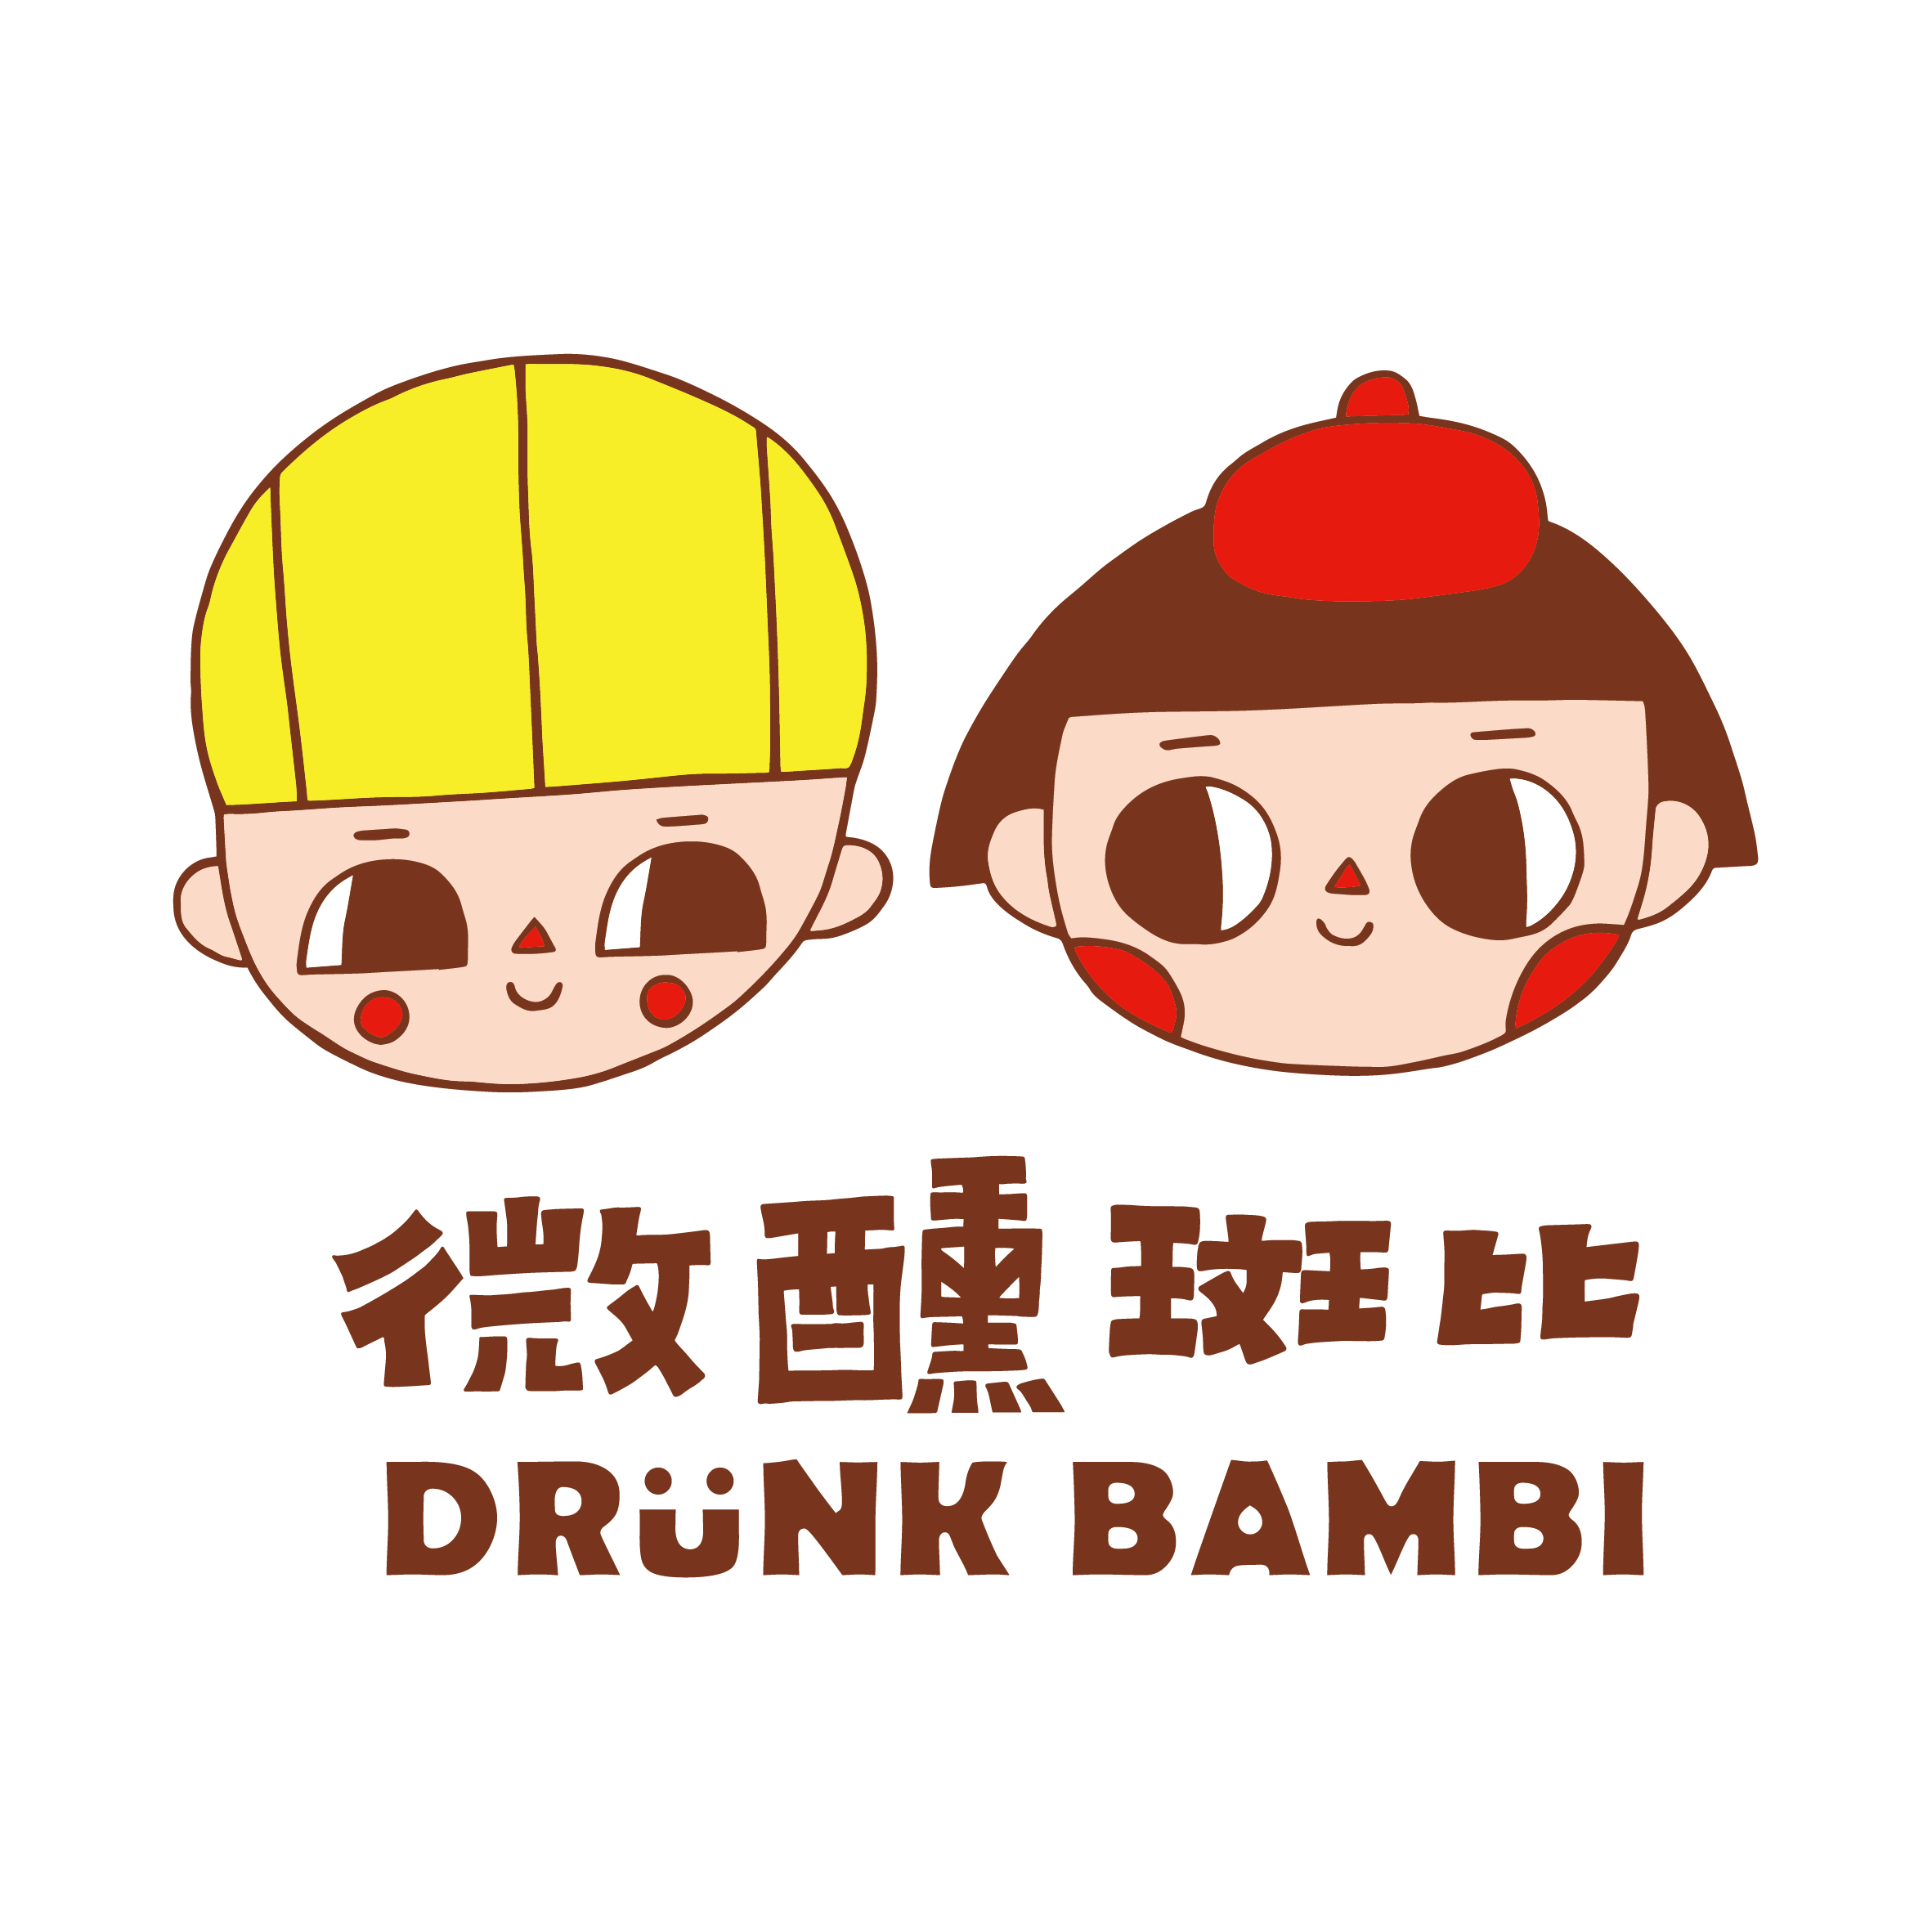 Drunk Bambi / 微醺斑比